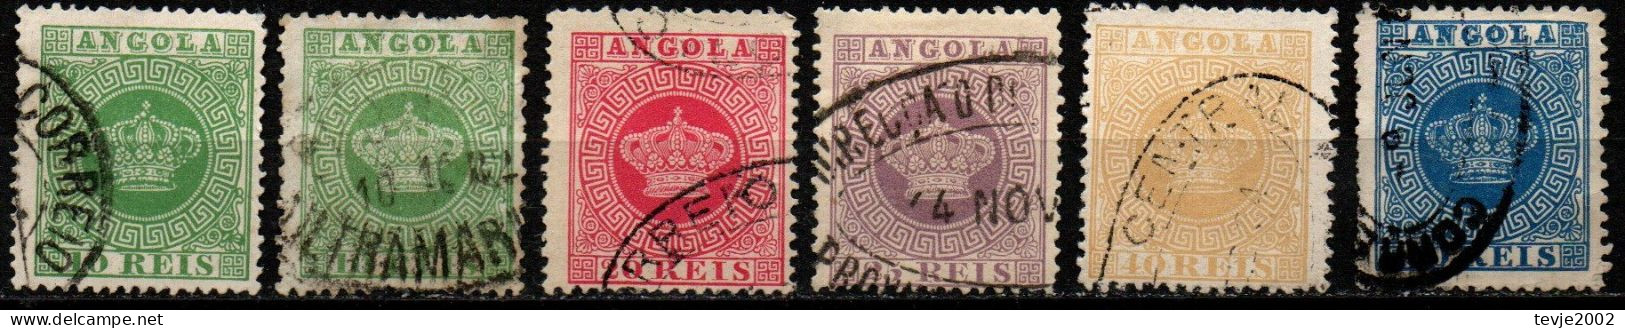 Angola 1881 - Mi.Nr. 10 - 14 A+C - Gestempelt Used - Angola